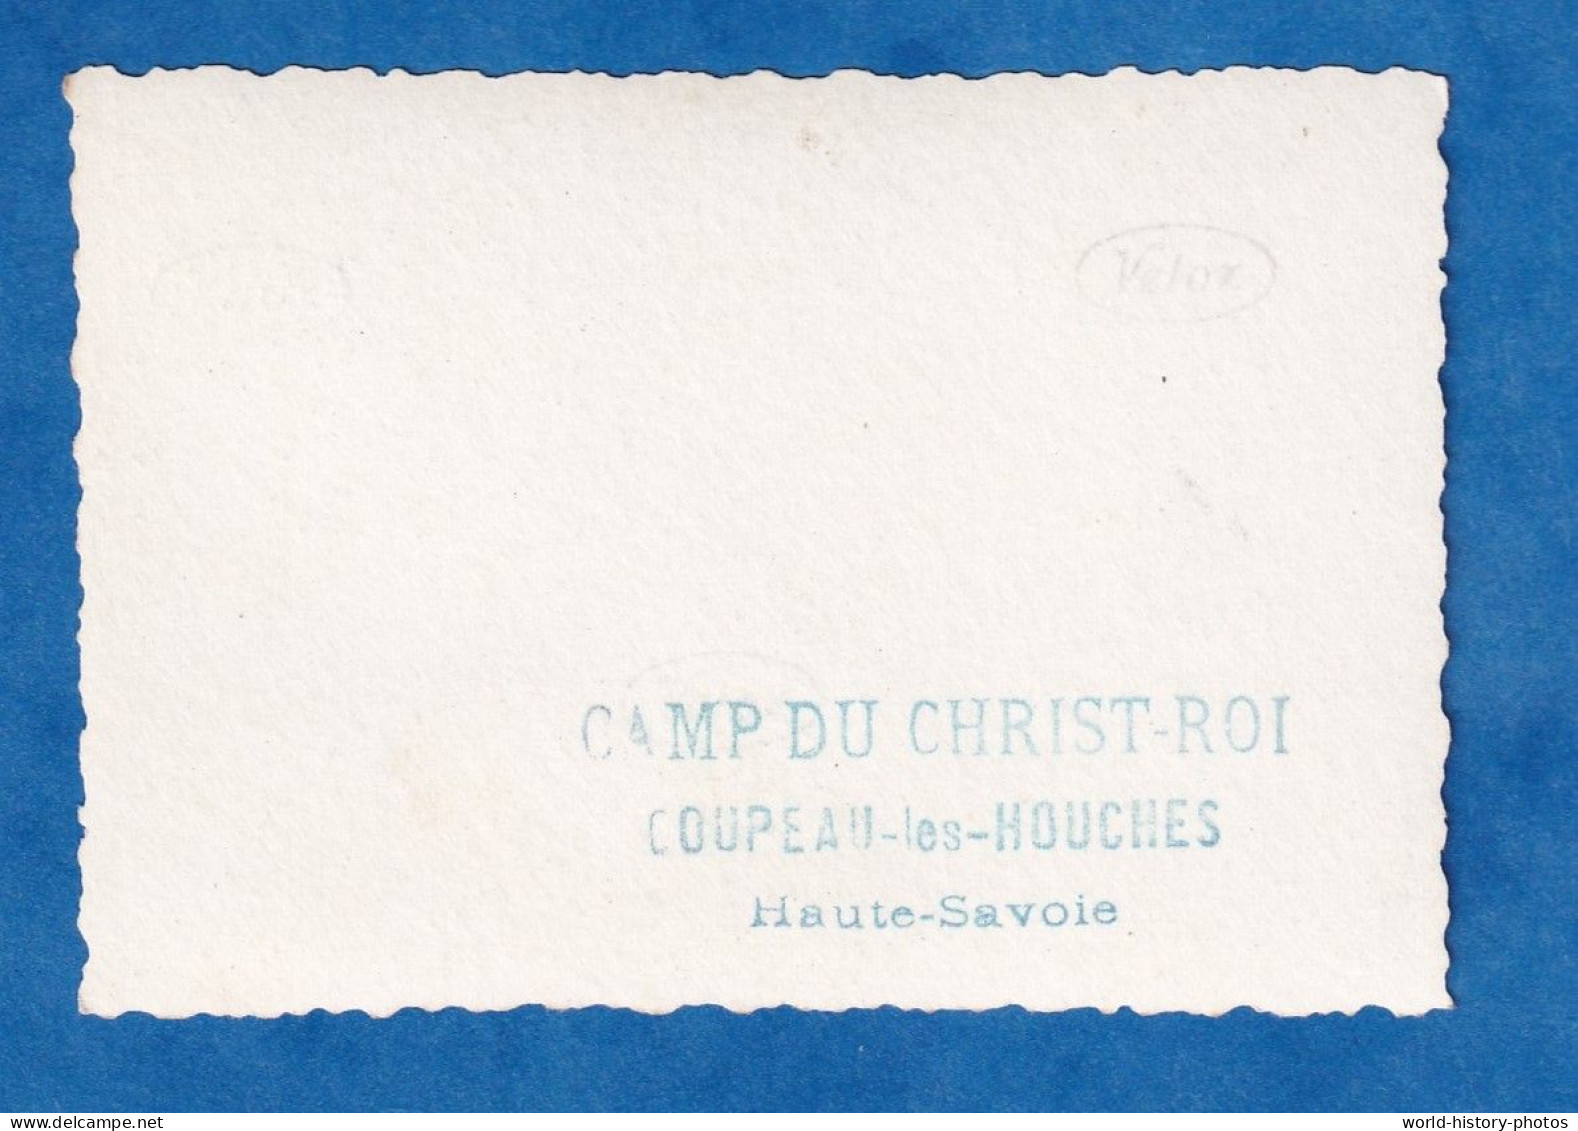 Photo Ancienne Snapshot - COUPEAU Les HOUCHES - Camp Du Christ Roi - Autel Scout - Scoutisme - RARE - Places